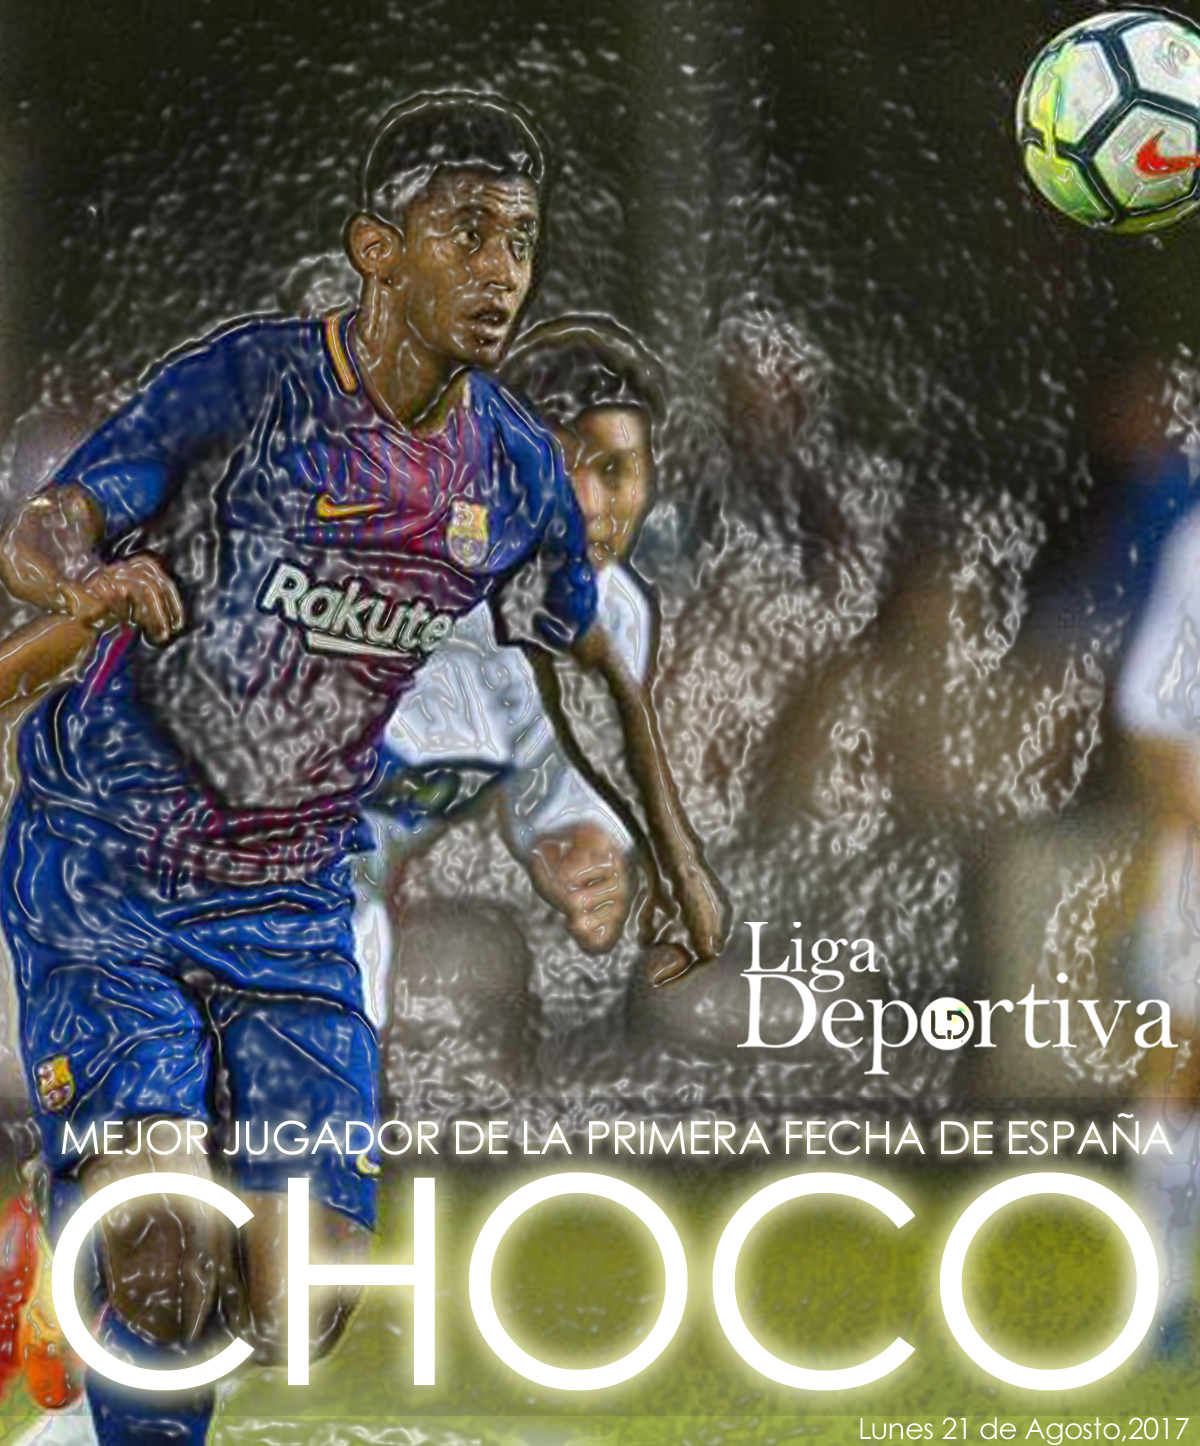 Choco Lozano, mejor jugador de la primera fecha en España 